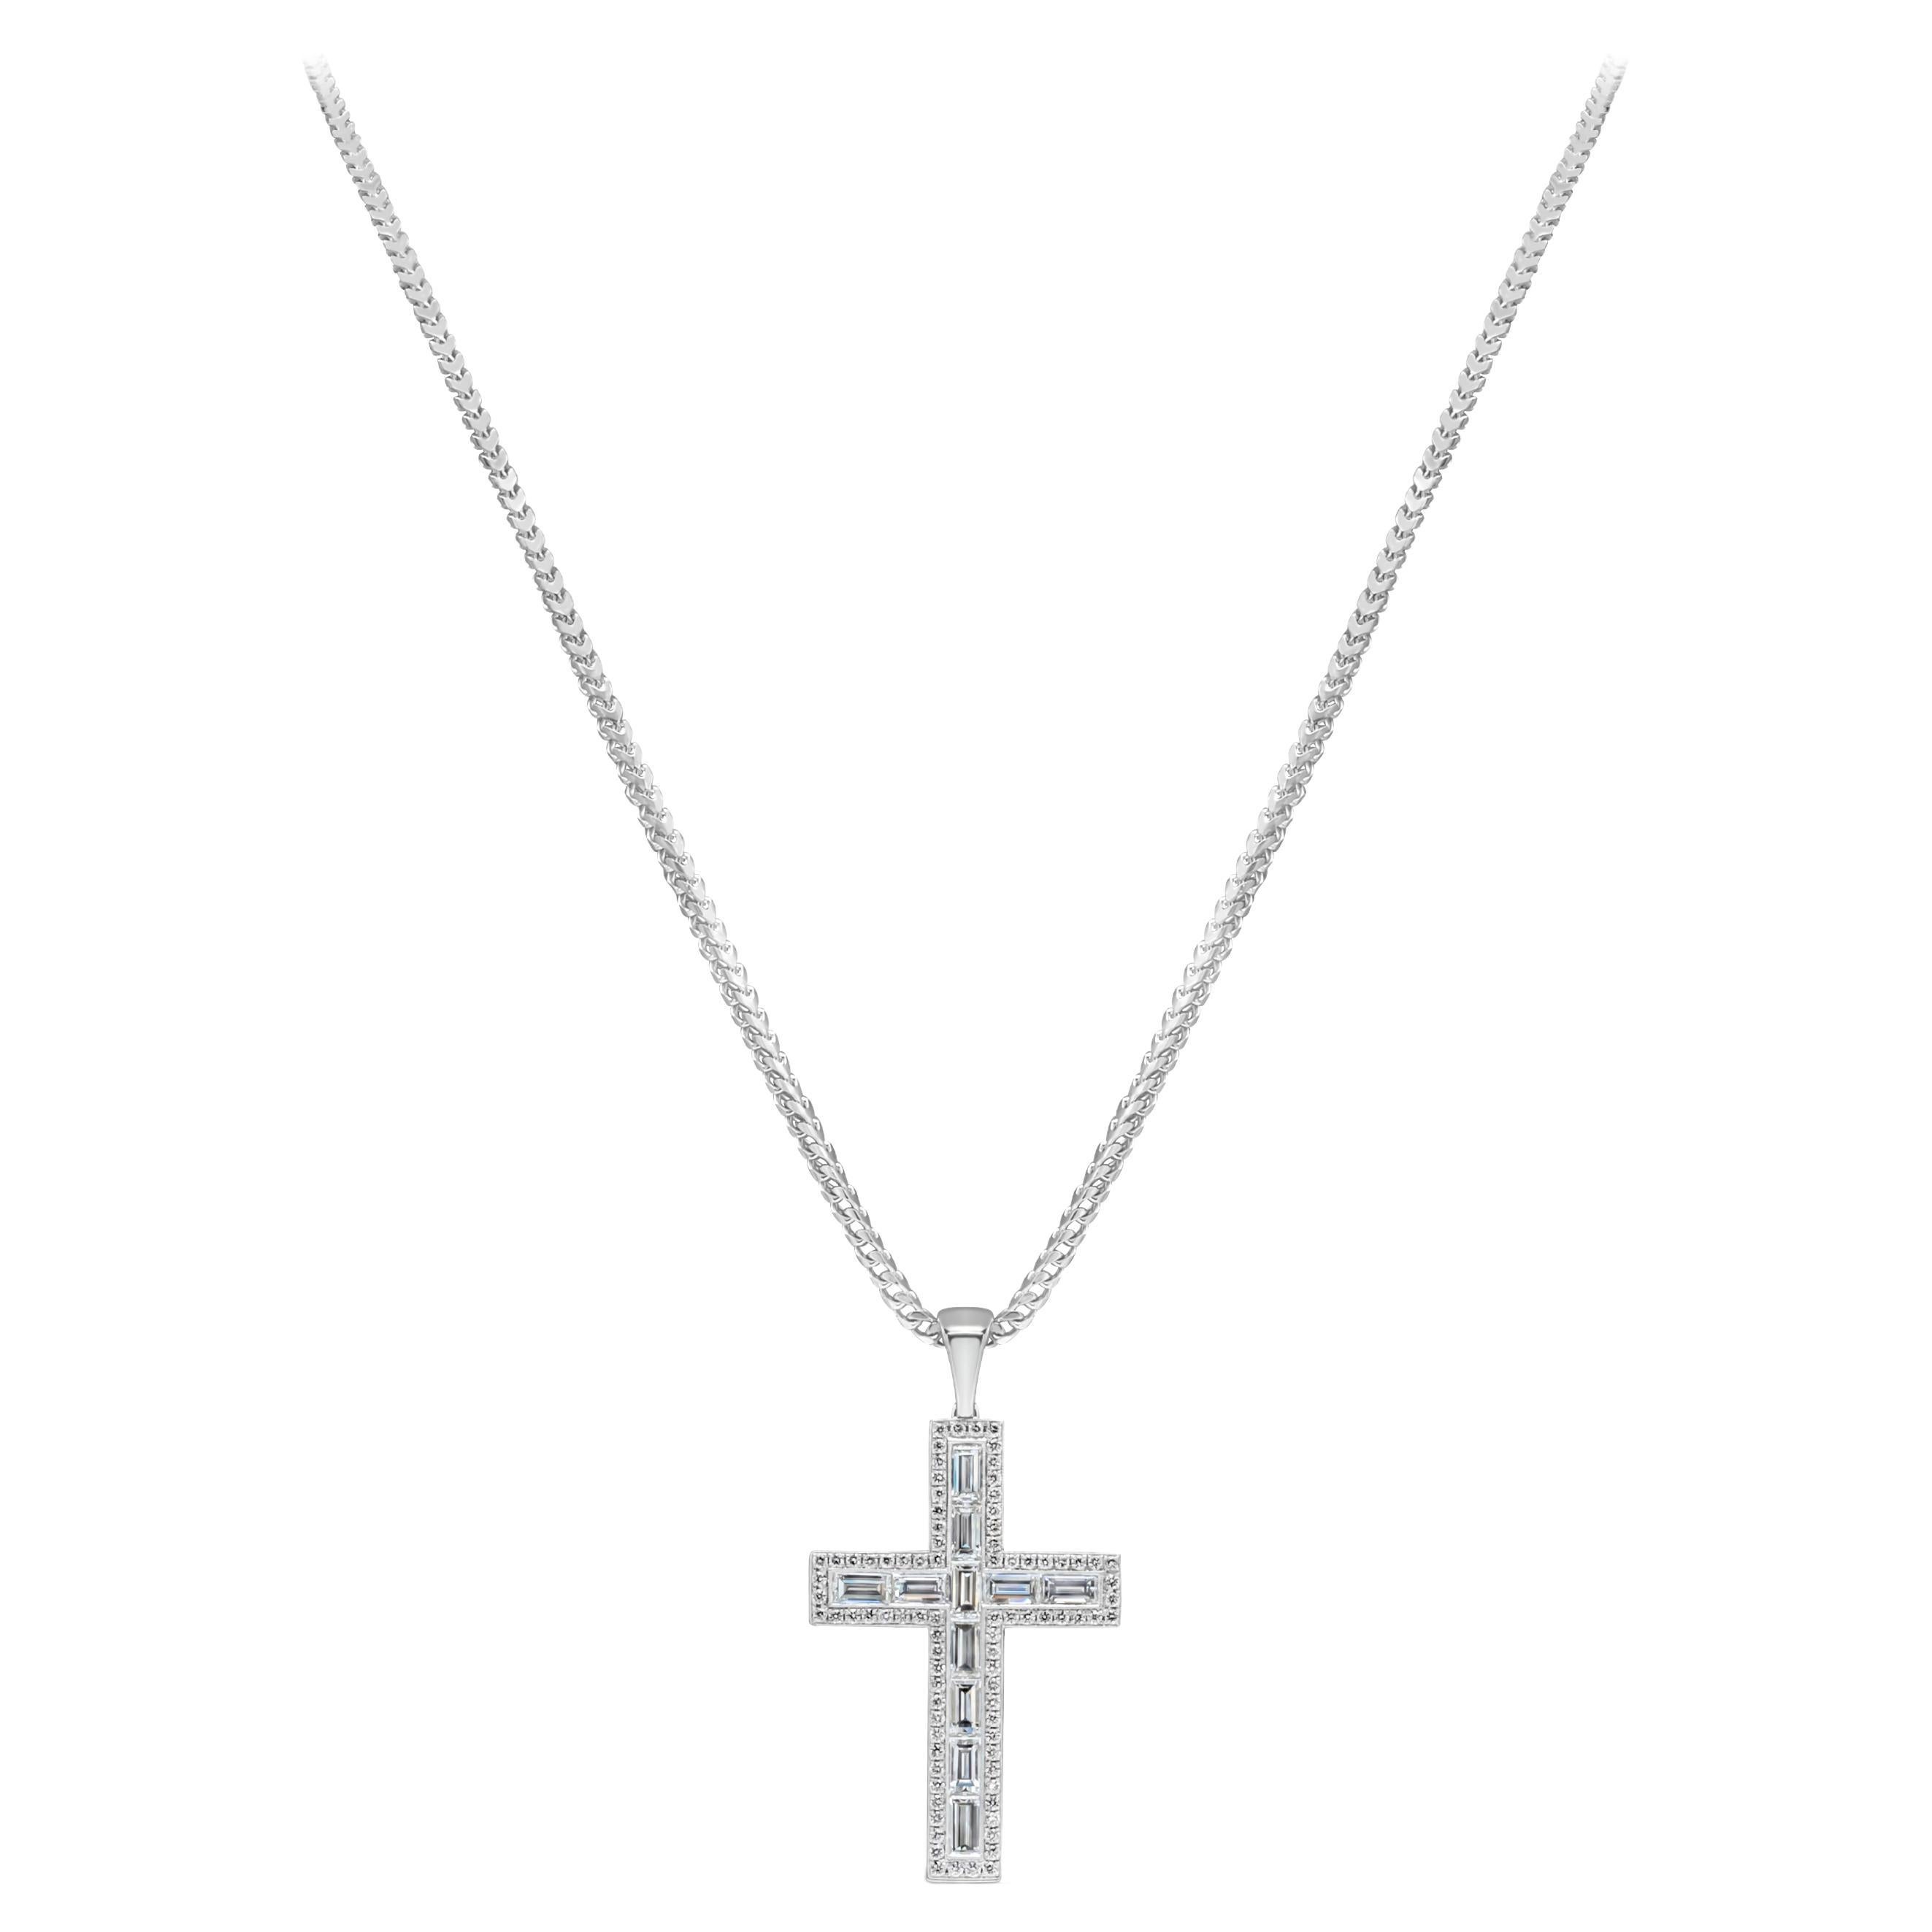 Un fascinant pendentif croix religieuse mettant en valeur des diamants baguettes en serti clos pesant 4,10 carats de couleur G et VS+ de pureté, entourés de diamants ronds brillants pesant 0,89 carats, suspendus à une anse de 10 mm, sur une chaîne